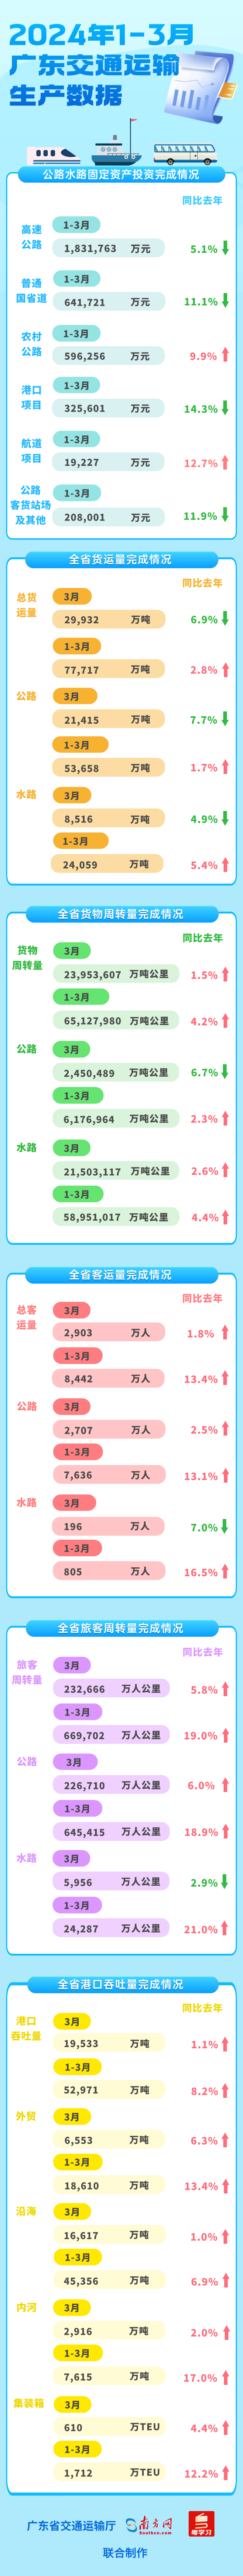 2024年1-3月广东交通基建投资 运输生产数据